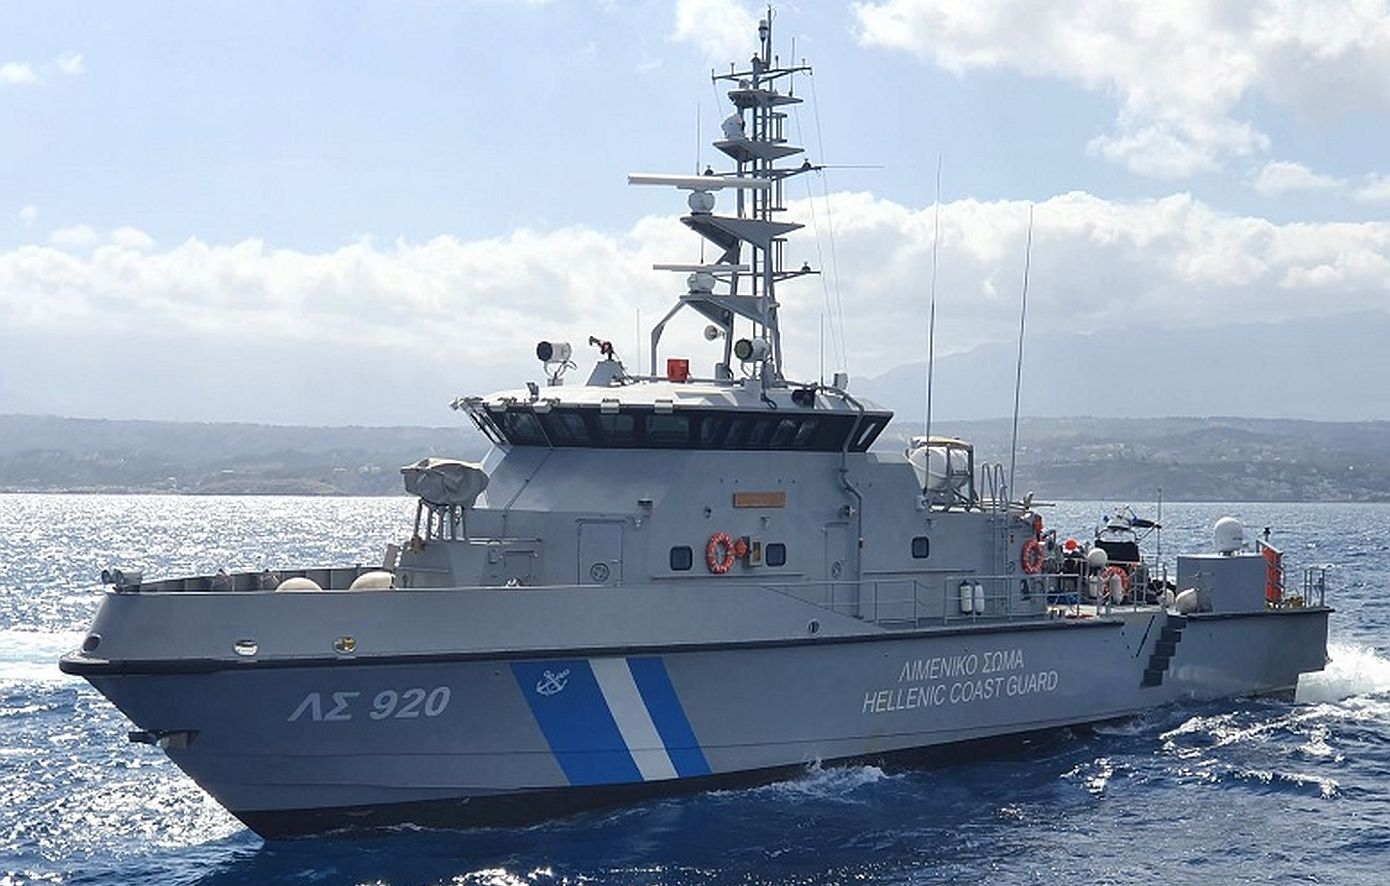 Ρέθυμνο: Πλοίαρχος φορτηγού πλοίου ετών βρέθηκε νεκρός μέσα στην καμπίνα του